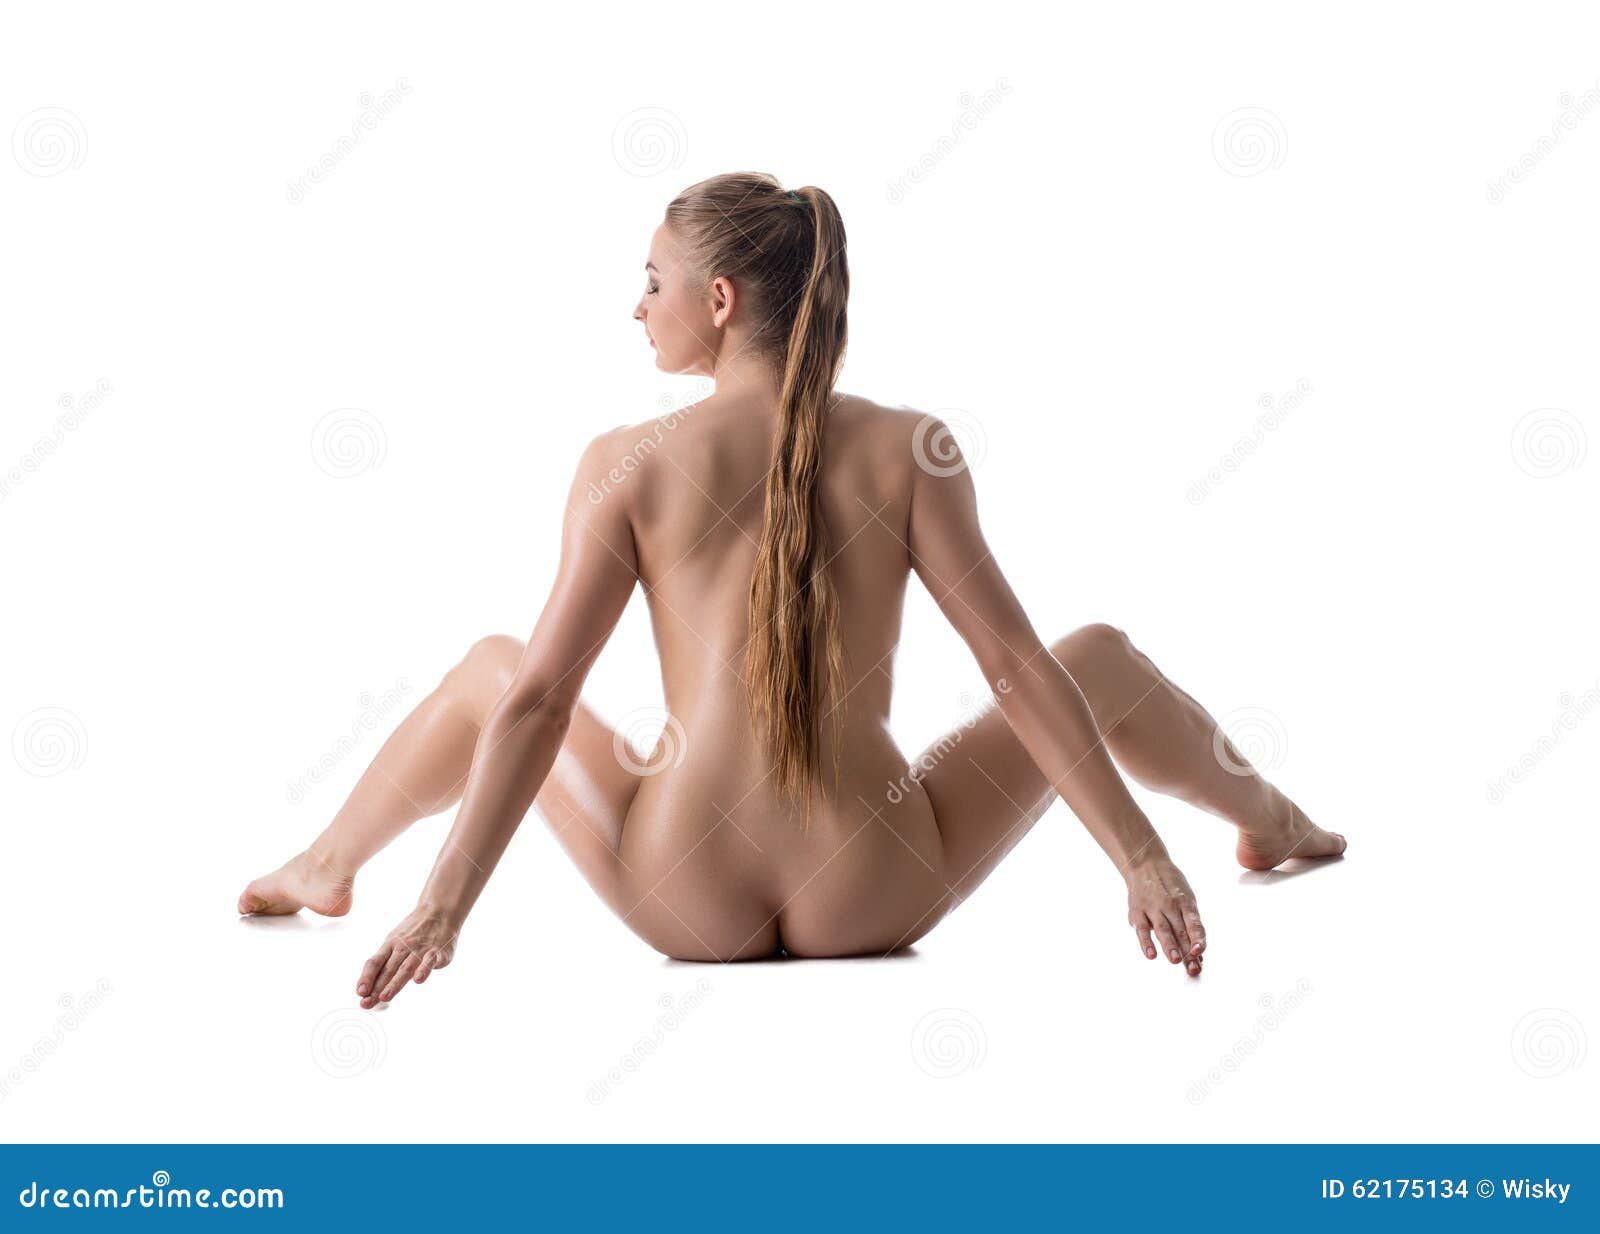 White girl spread legs